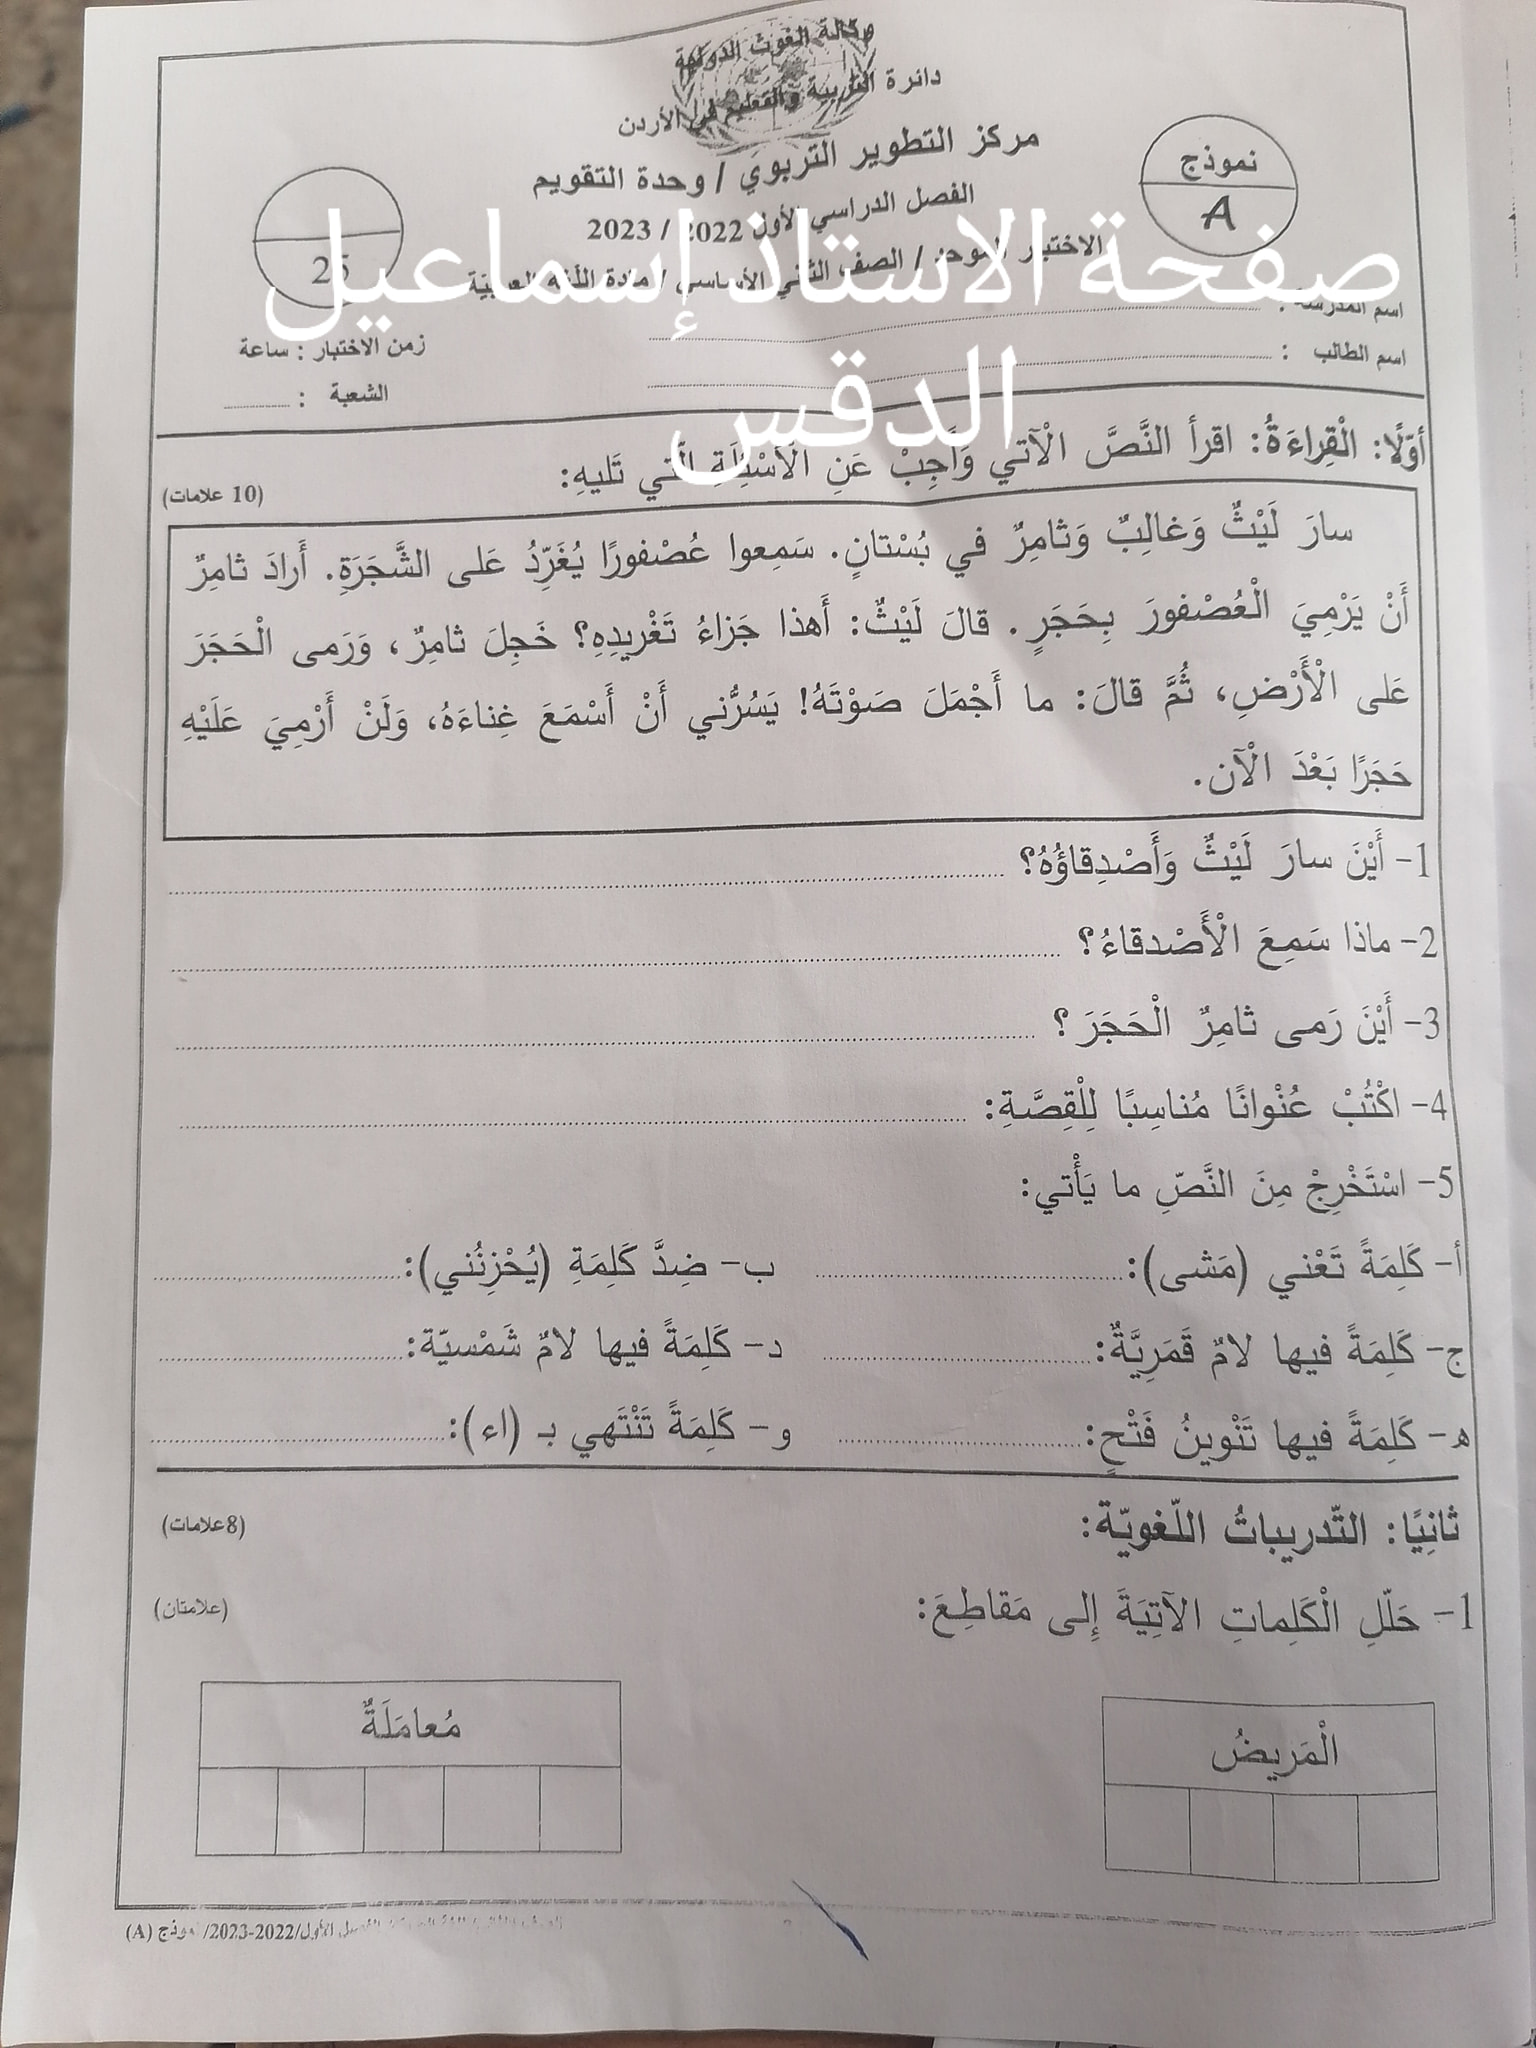 MjUwMTQ5MC4yMTE1 بالصور امتحان اللغة العربية النهائي للصف الثاني الفصل الاول 2023 نموذج A وكالة